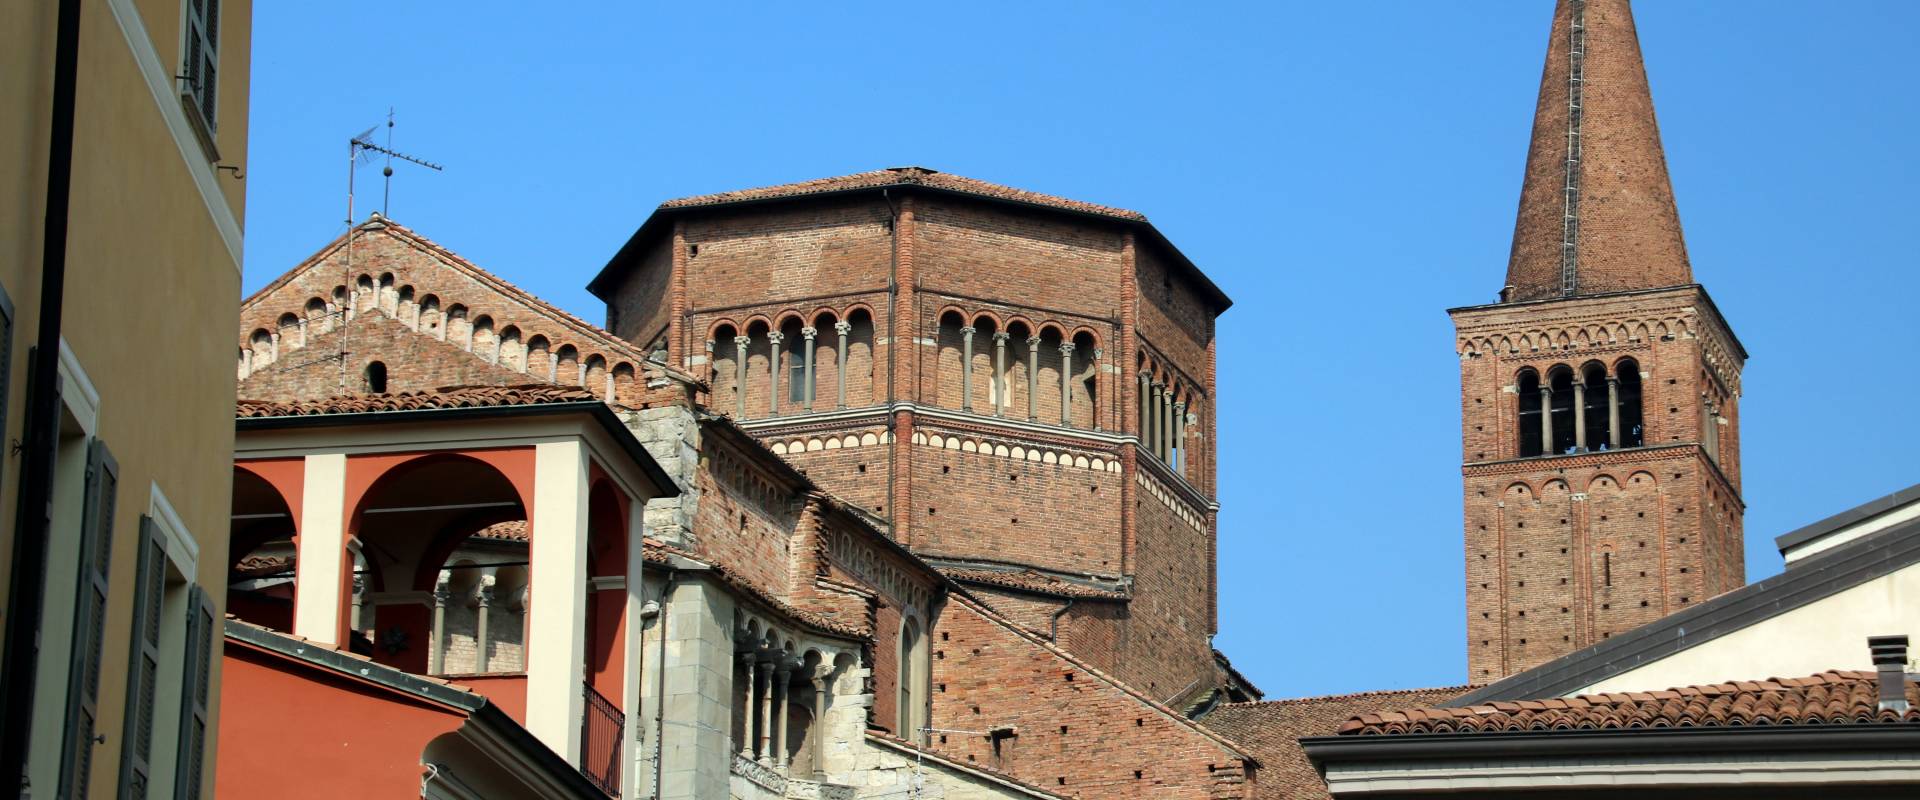 Duomo di Piacenza, esterno 12 foto di Mongolo1984